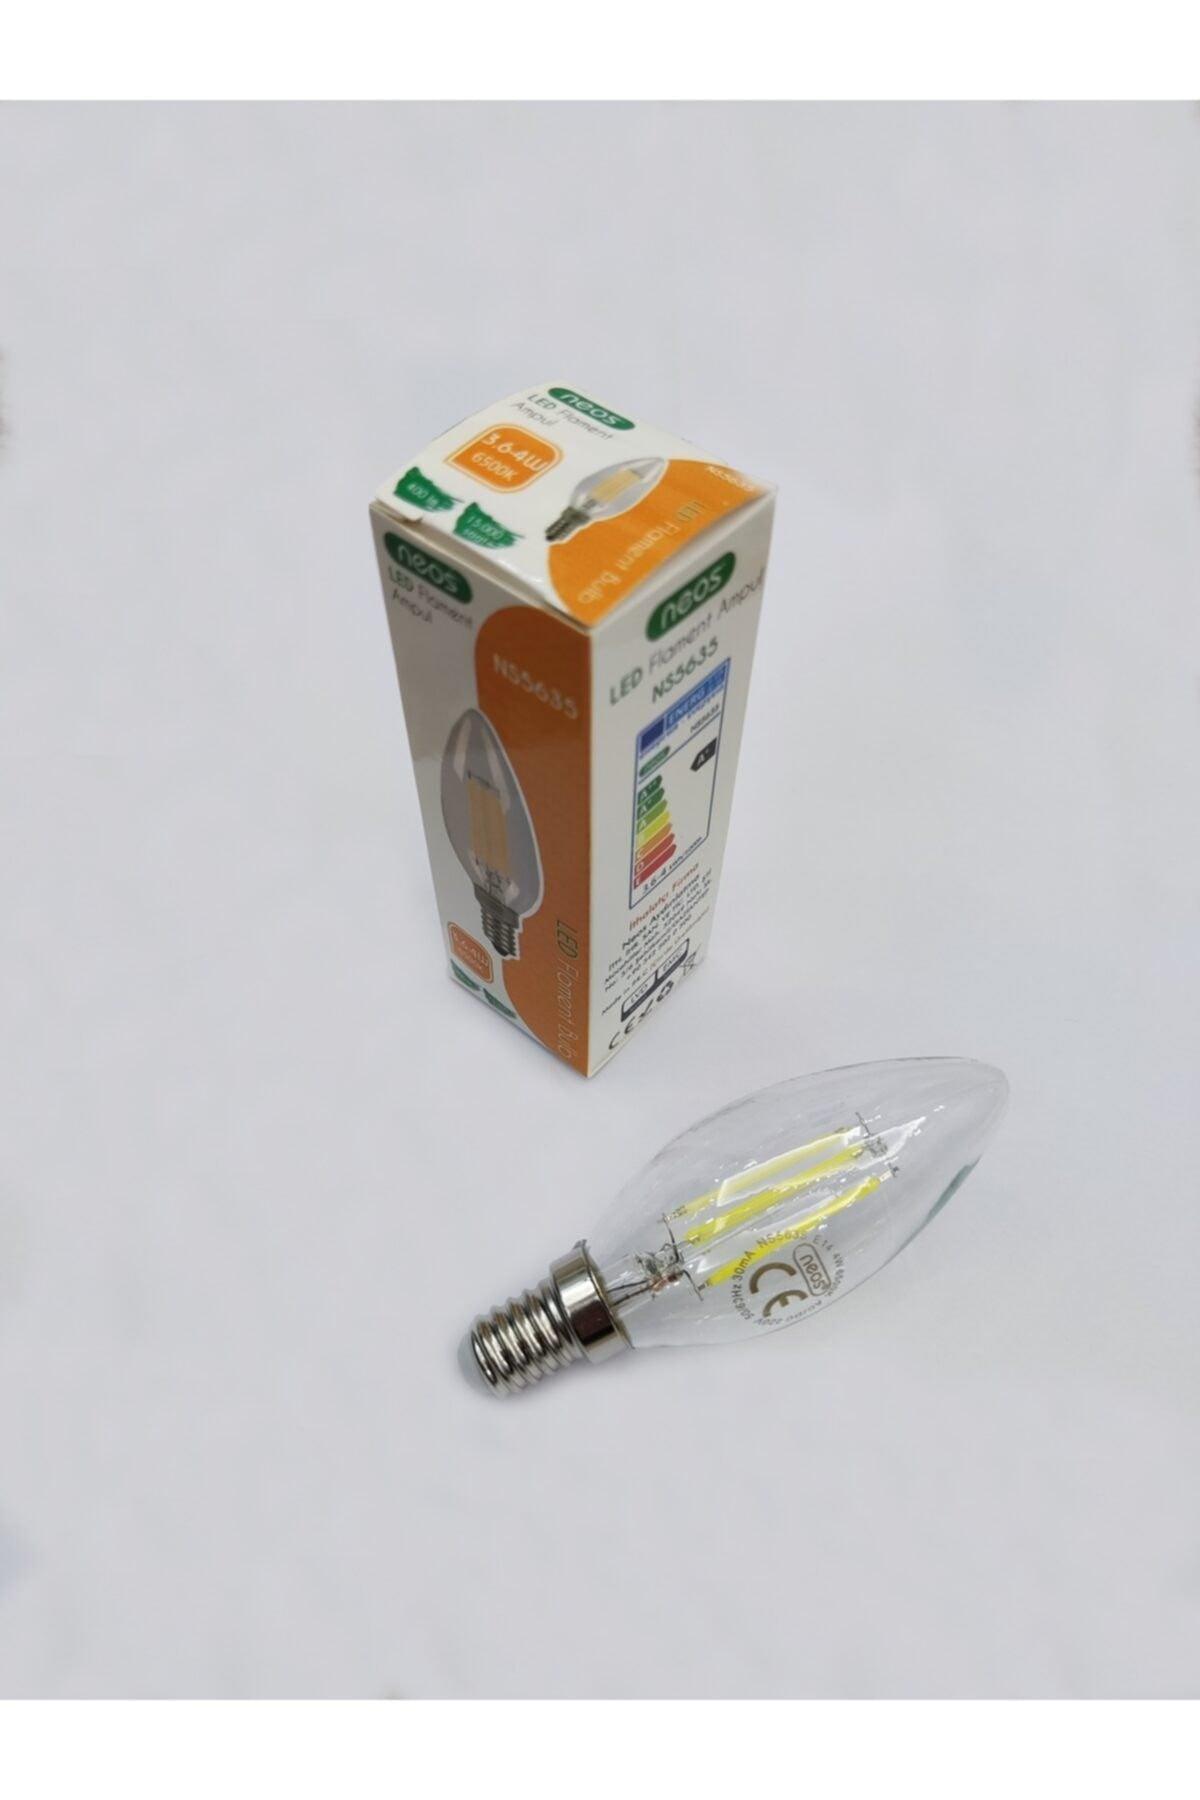 40 Pcs E14 Led Bulbs 3.6-4w 6500k White Light